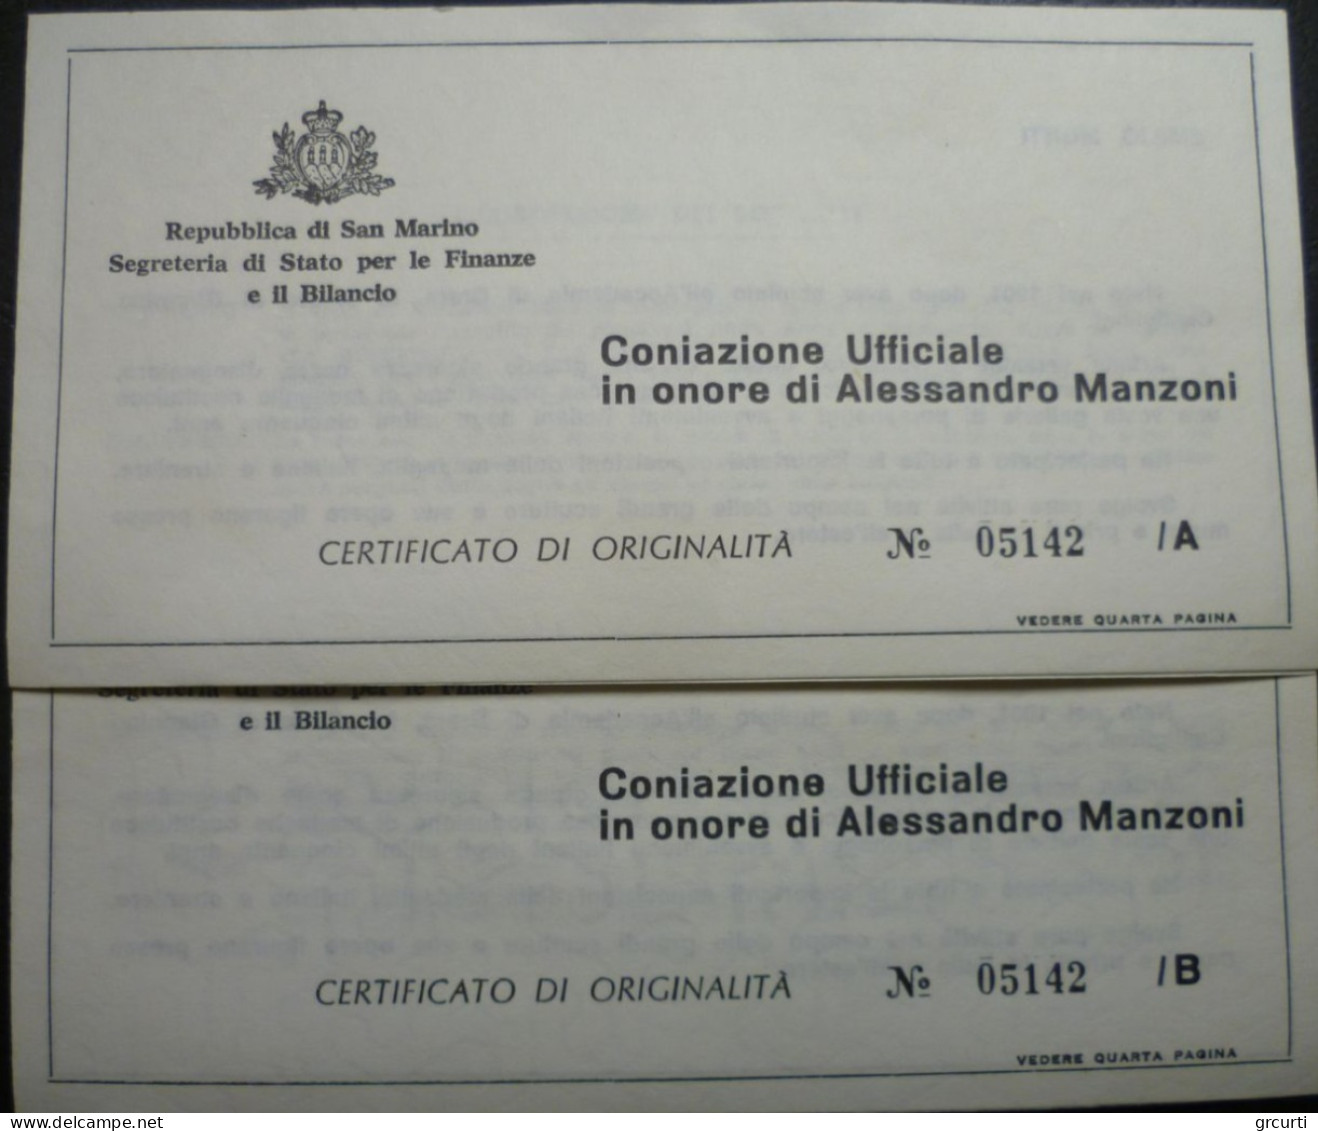 San Marino - 1973 - Medaglie ufficiali per il Centenario della morte di Alessandro Manzoni